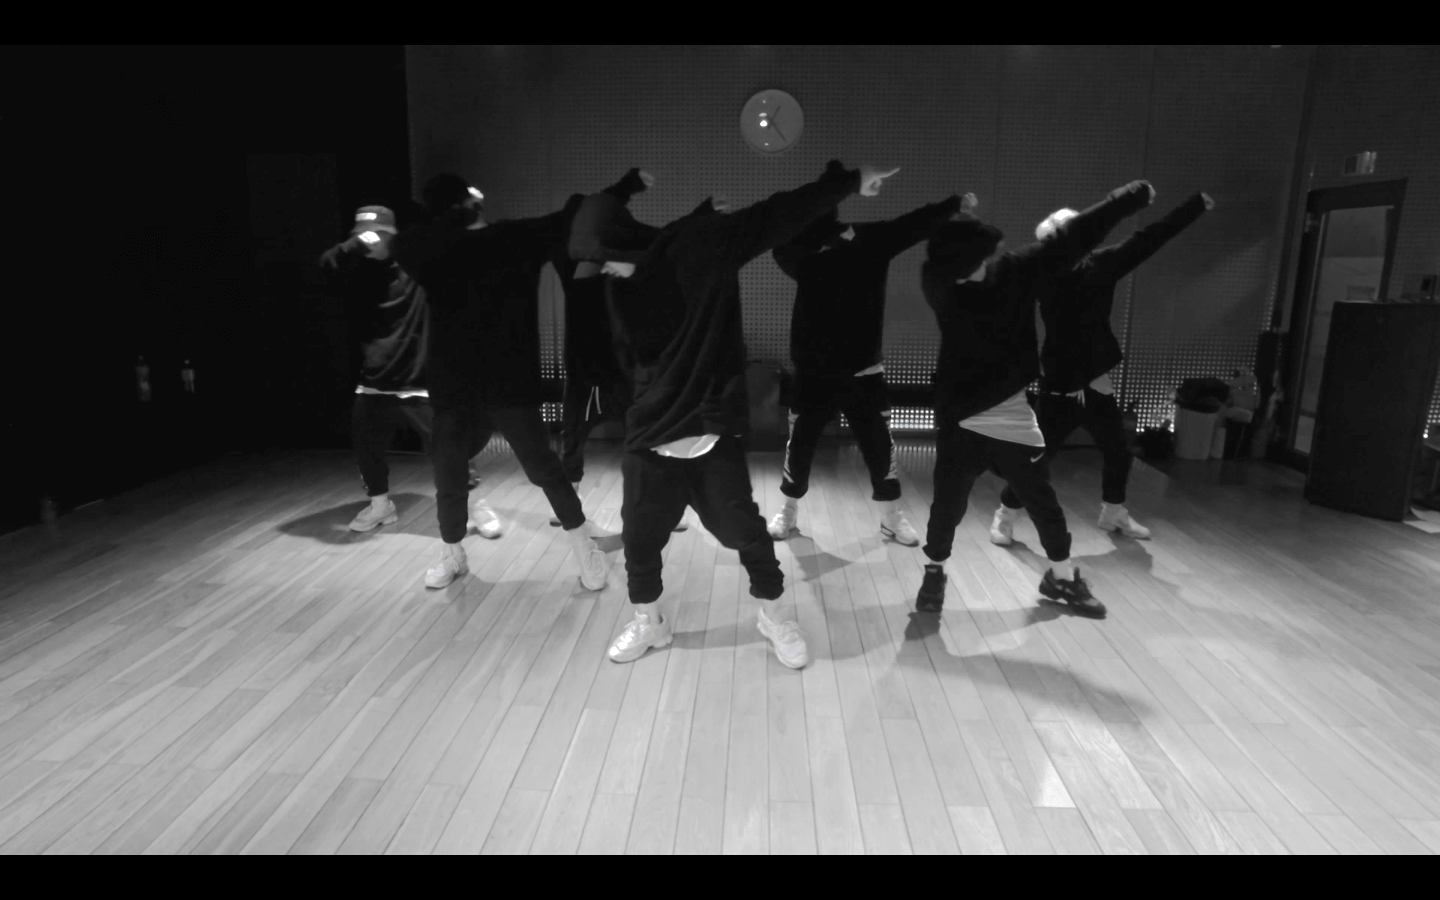 iKON - ‘BLING BLING’ DANCE PRACTICE VIDEO